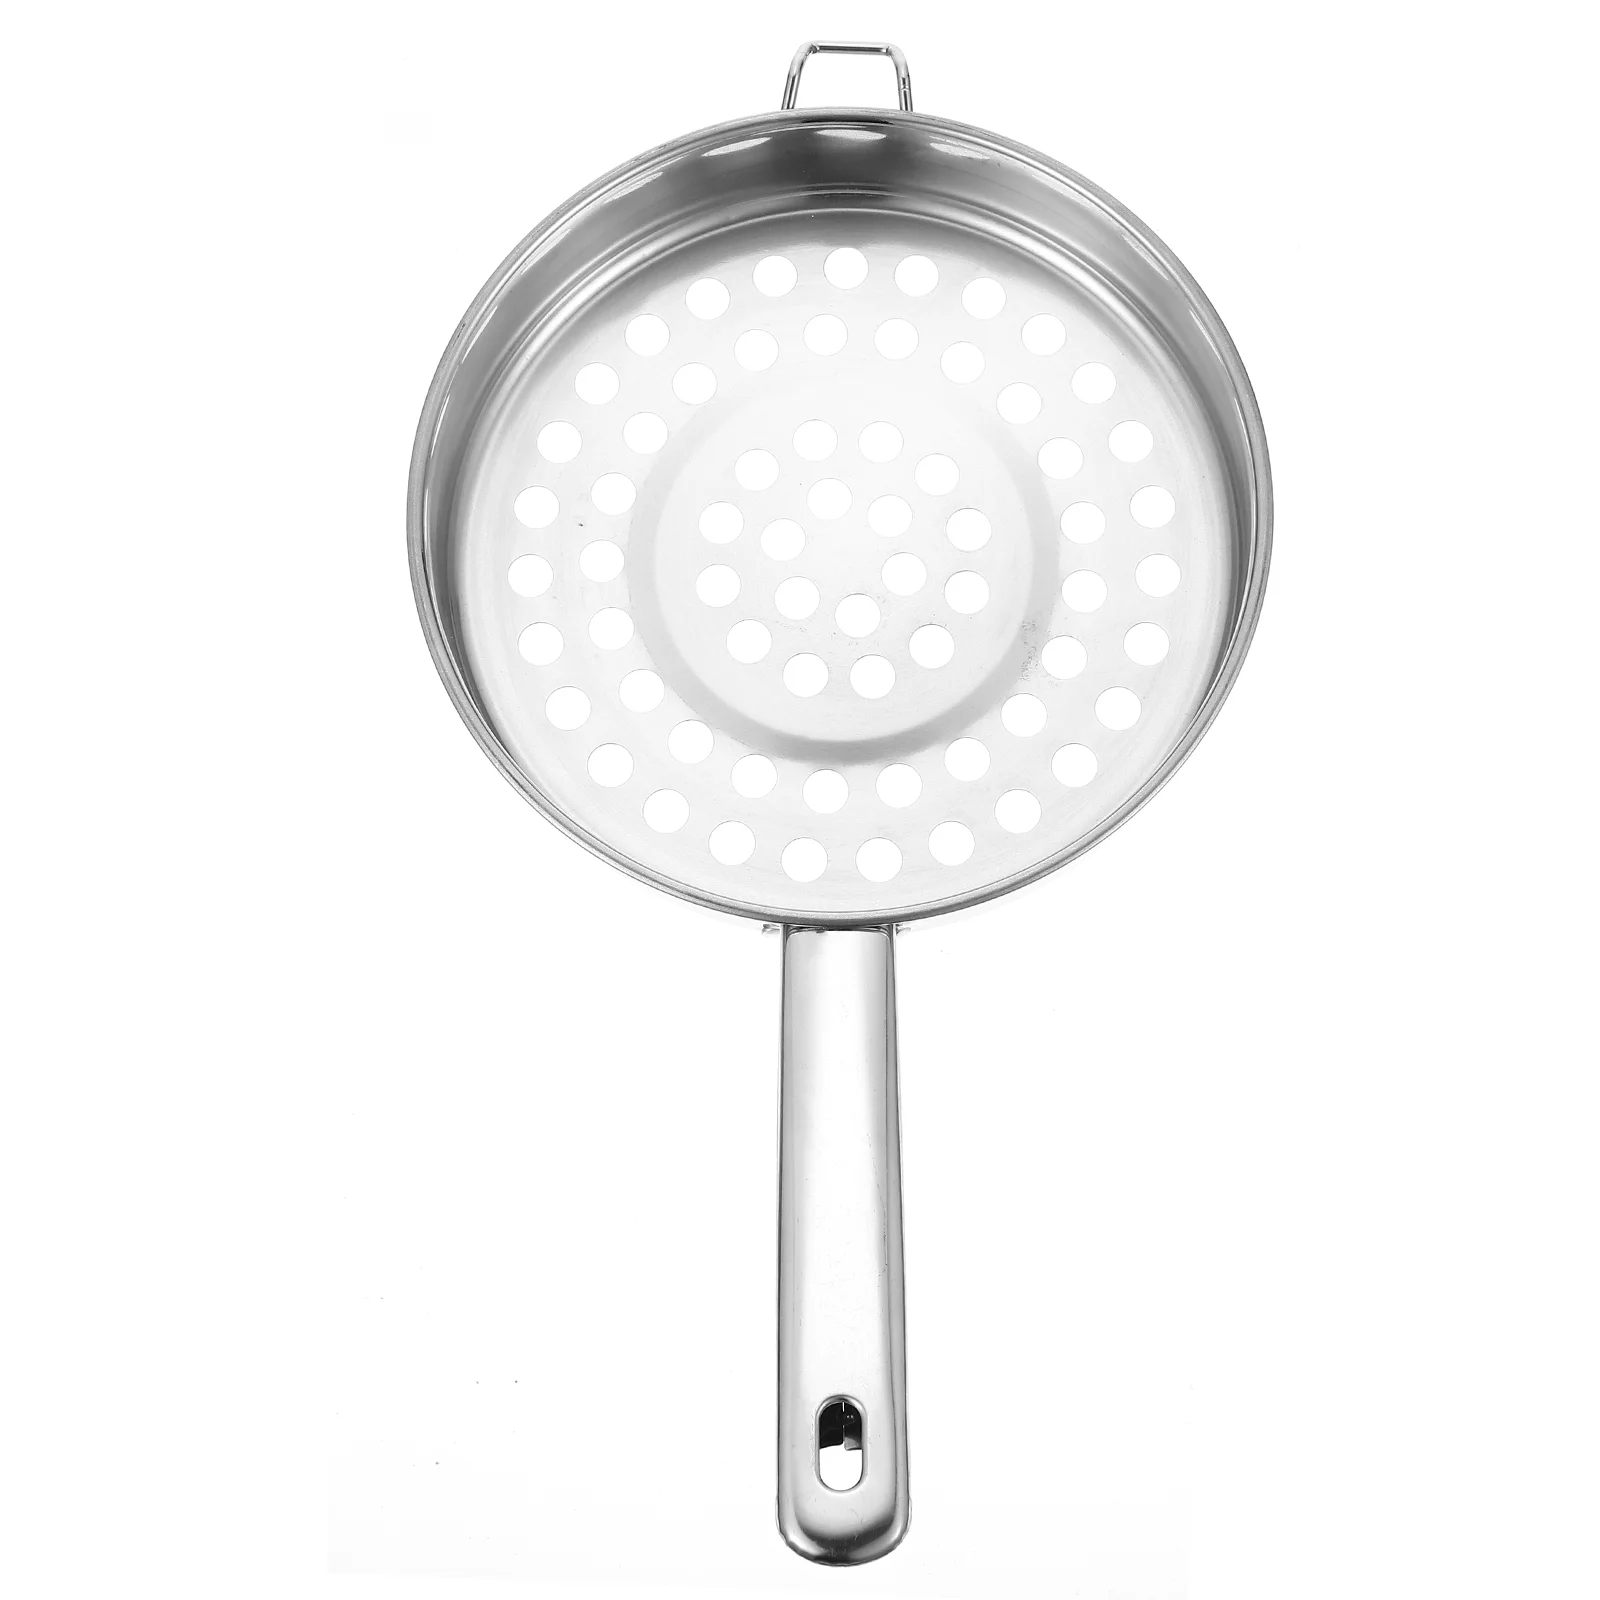 

Strainer Colander Spoon Basket Metal Pasta Slotted Skimmer Kitchen Mesh Cooking Steamer Sink Spoons Ladle Deep Noodle Handle